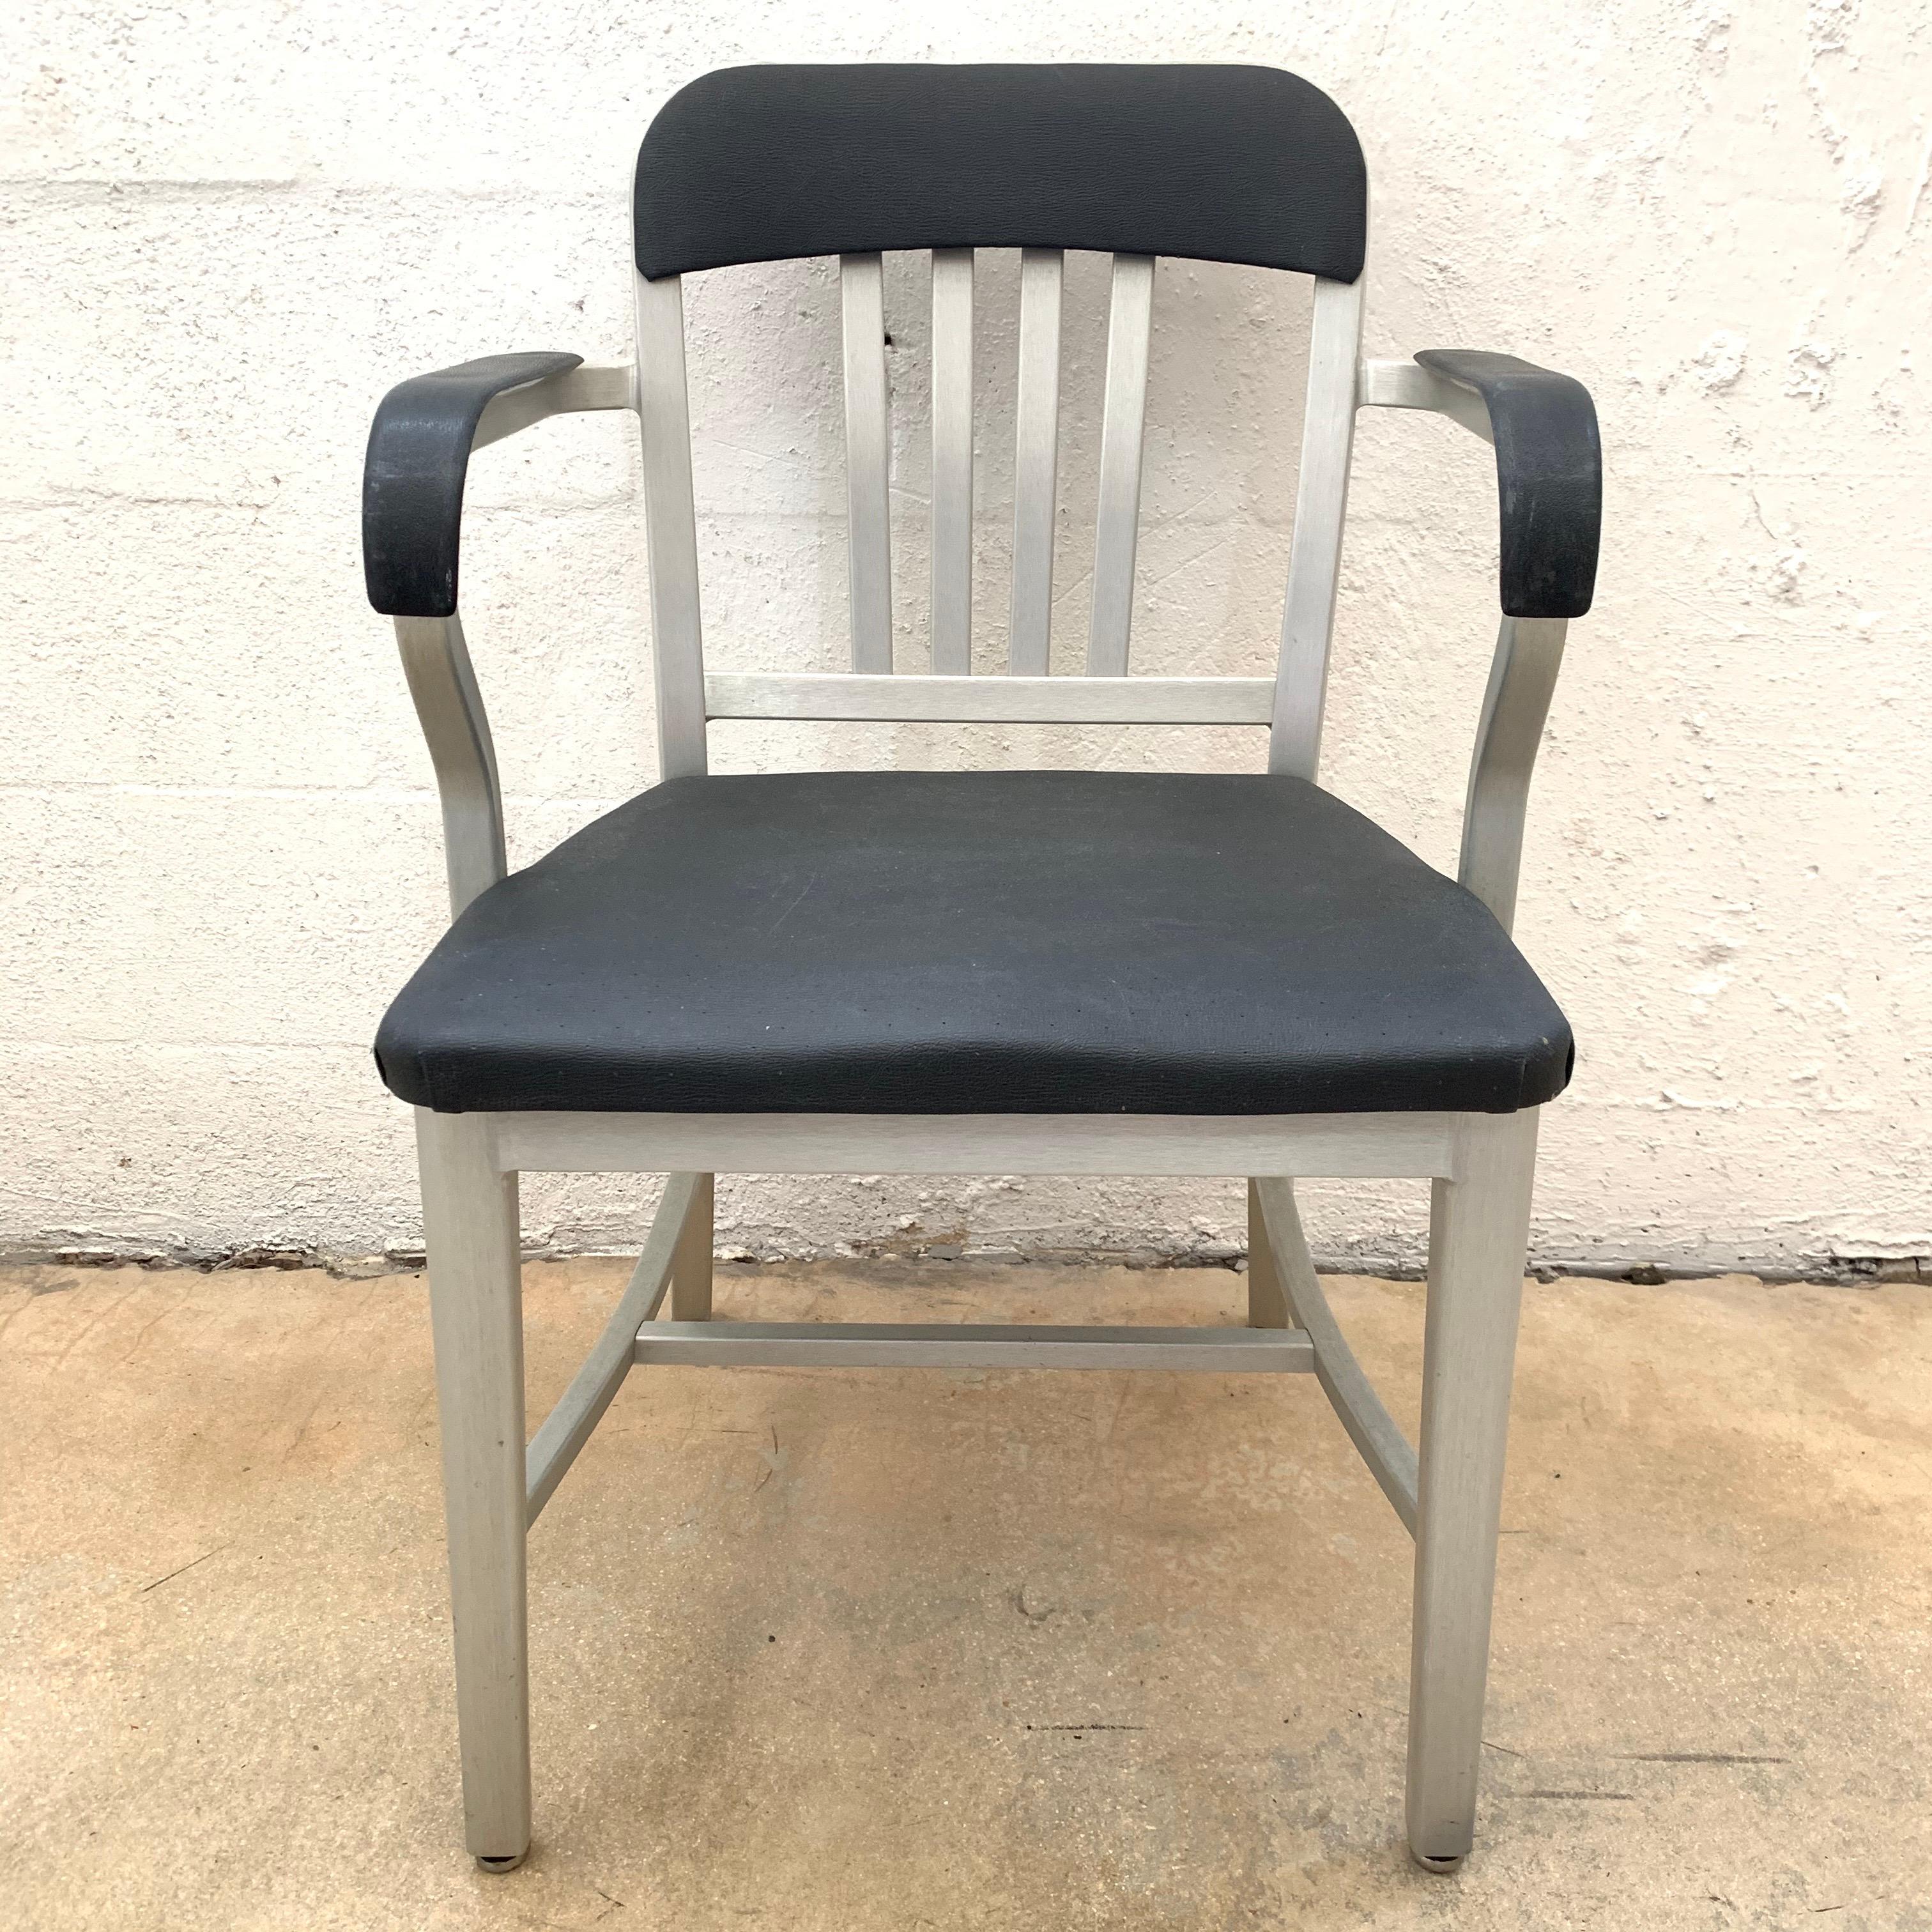 Vintage marine Stuhl in Aluminiumrahmen und original perforierte Vinyl-Polsterung von Emeco, original Vertrag Stück für die Bundesregierung Marine gemacht.